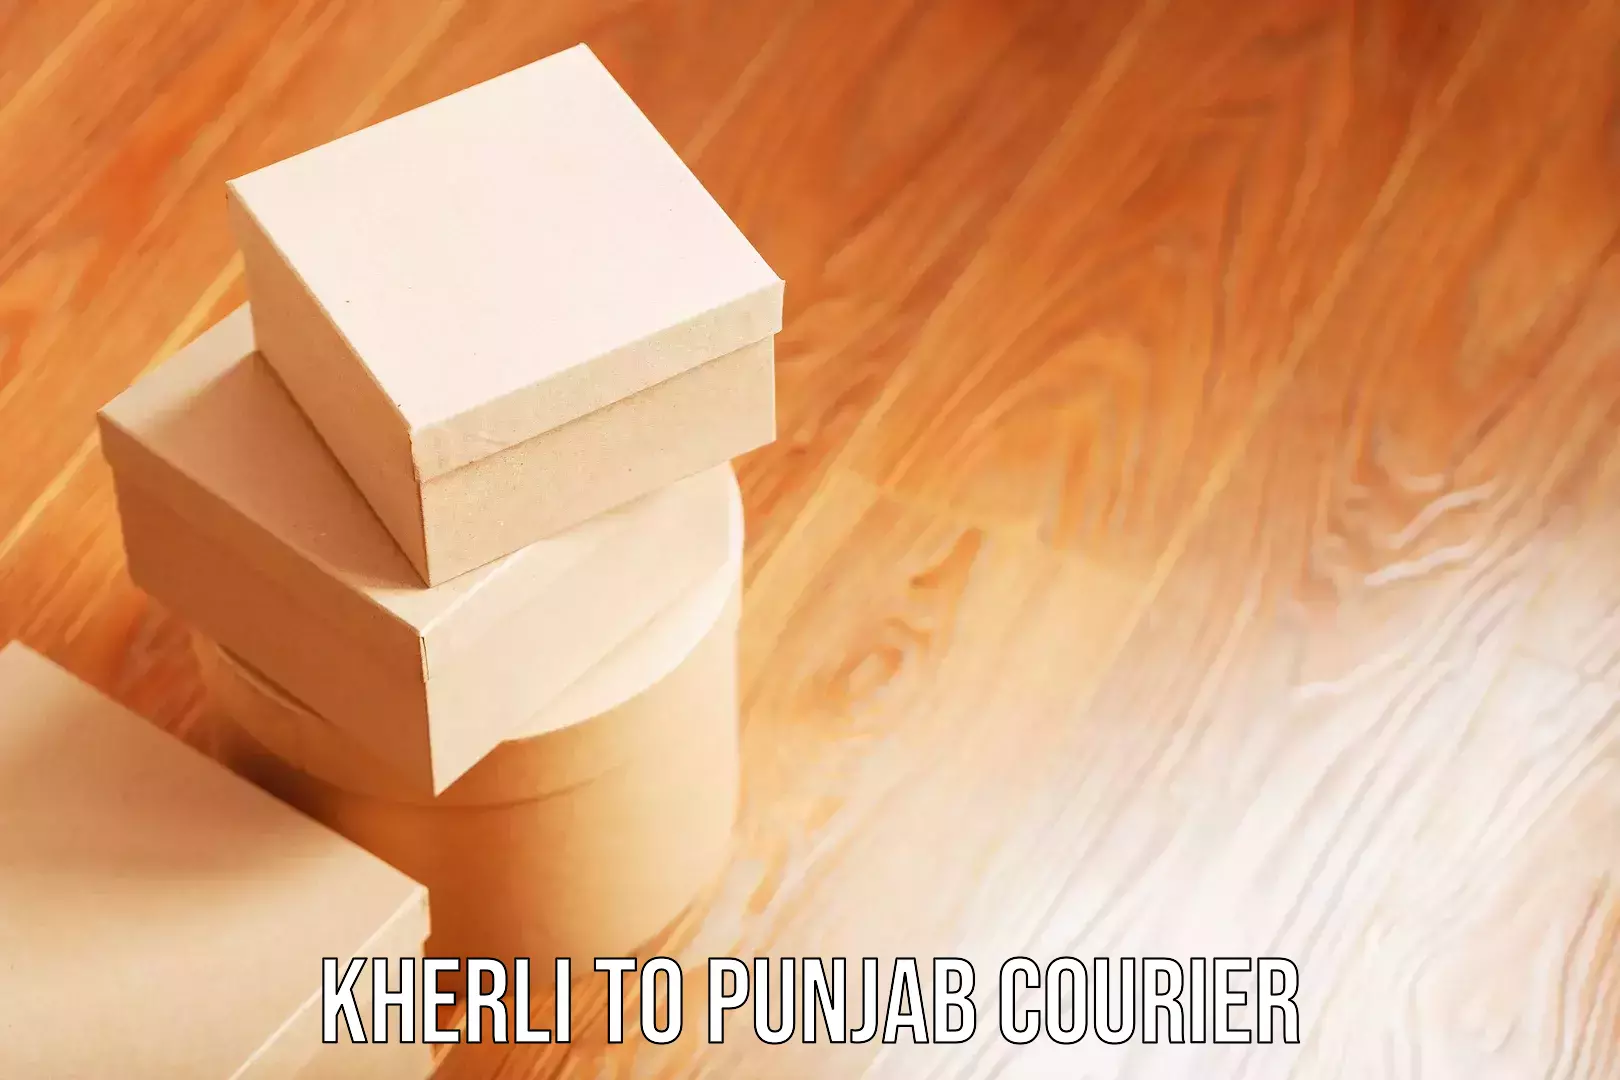 Baggage transport network Kherli to Punjab